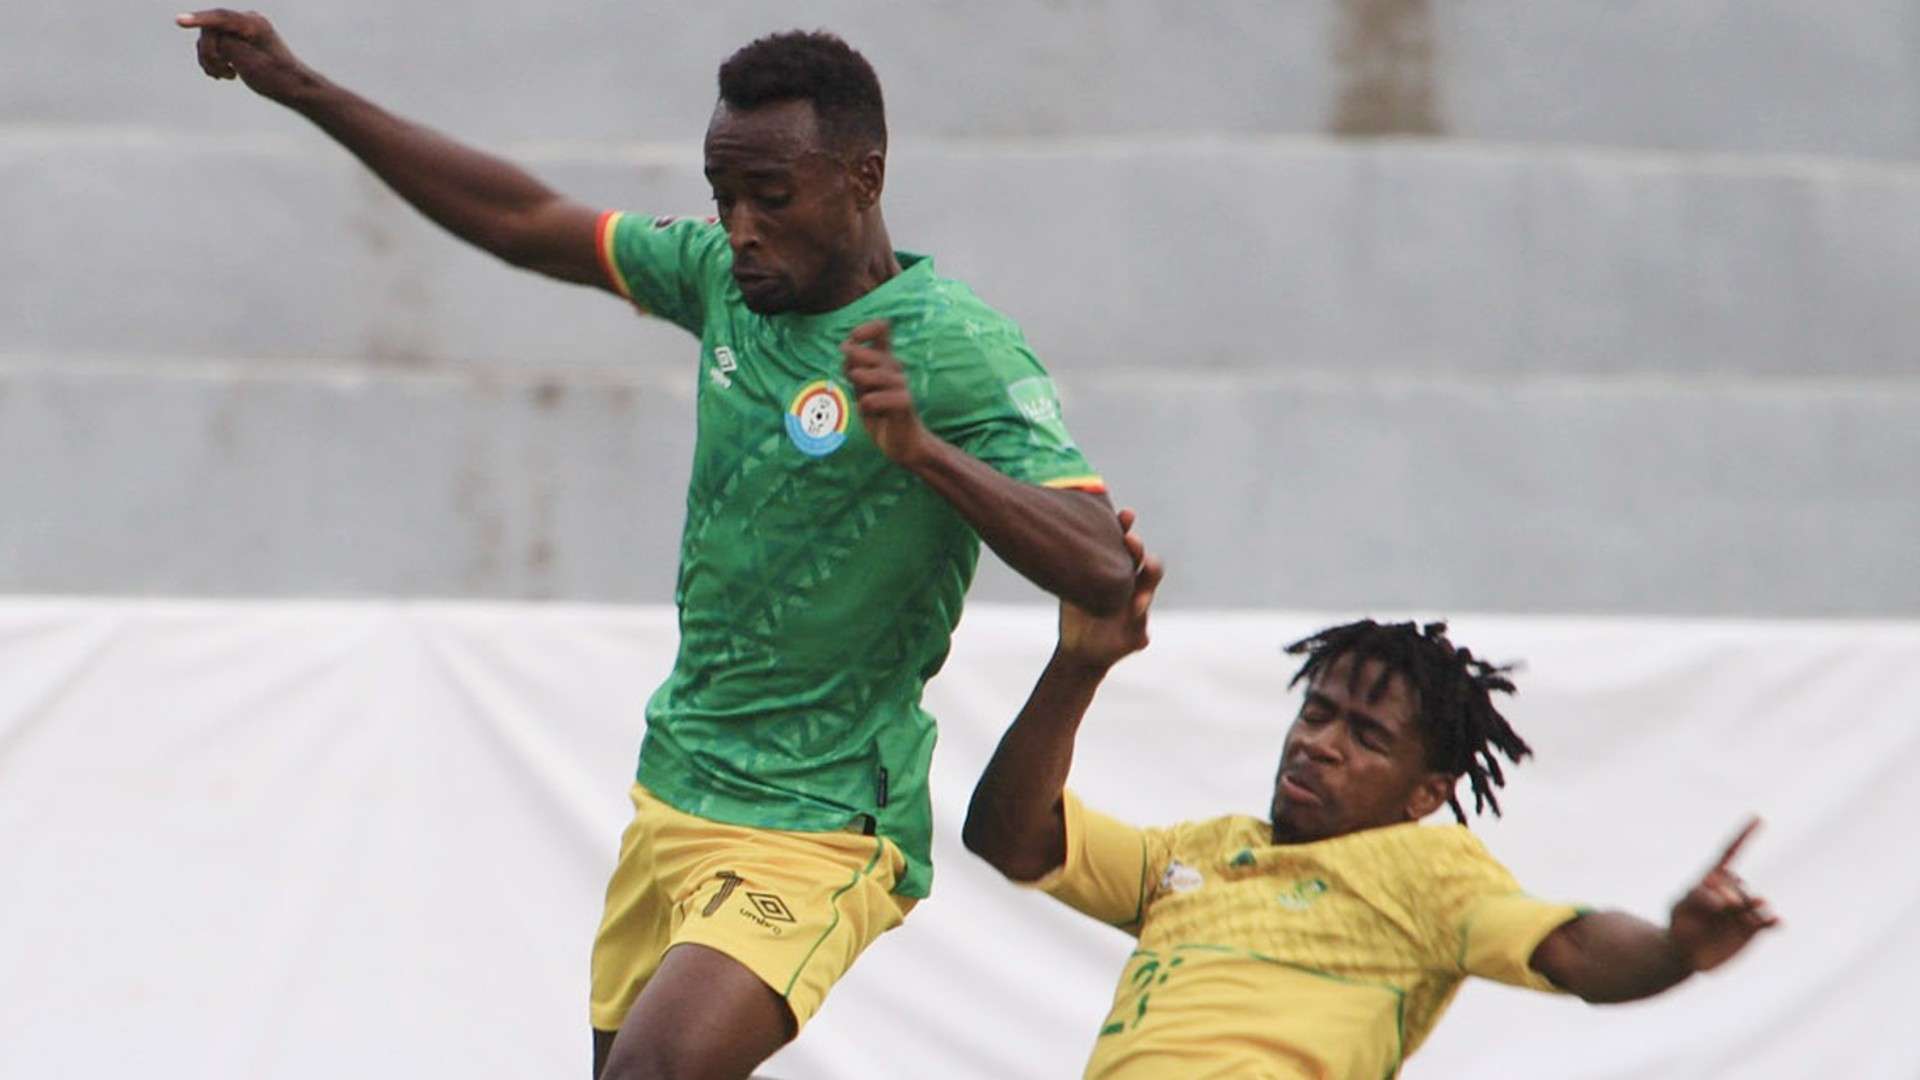 Amanuel Gebremikael of Ethiopia tackled by Terrence Mashego of Bafana Bafana, October 2021